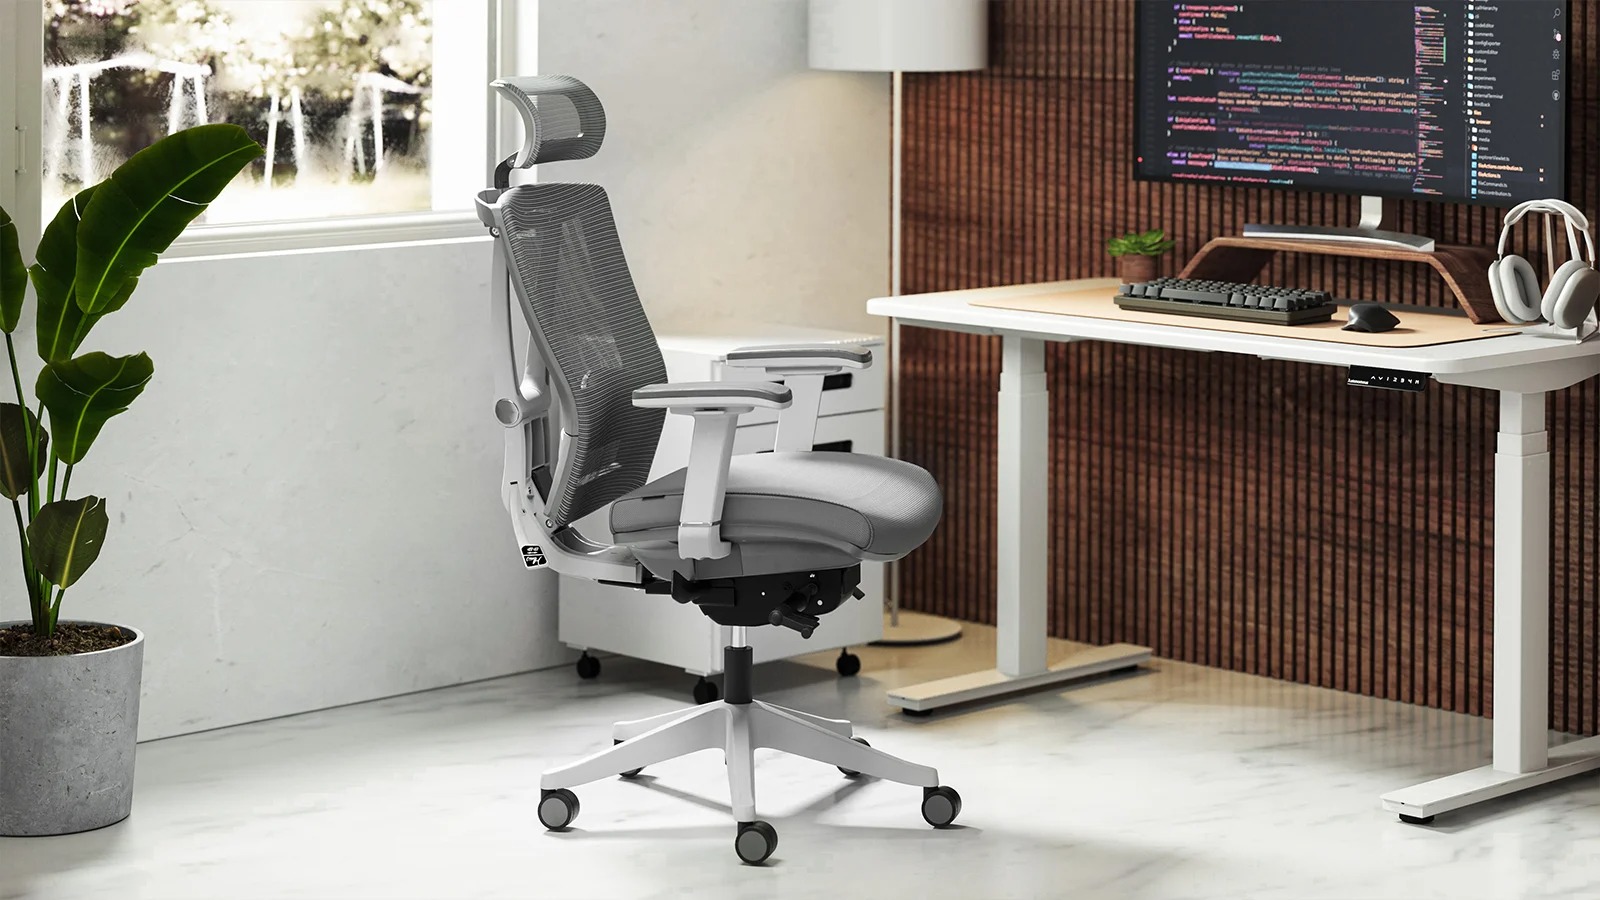 định nghĩa ergonomic chair